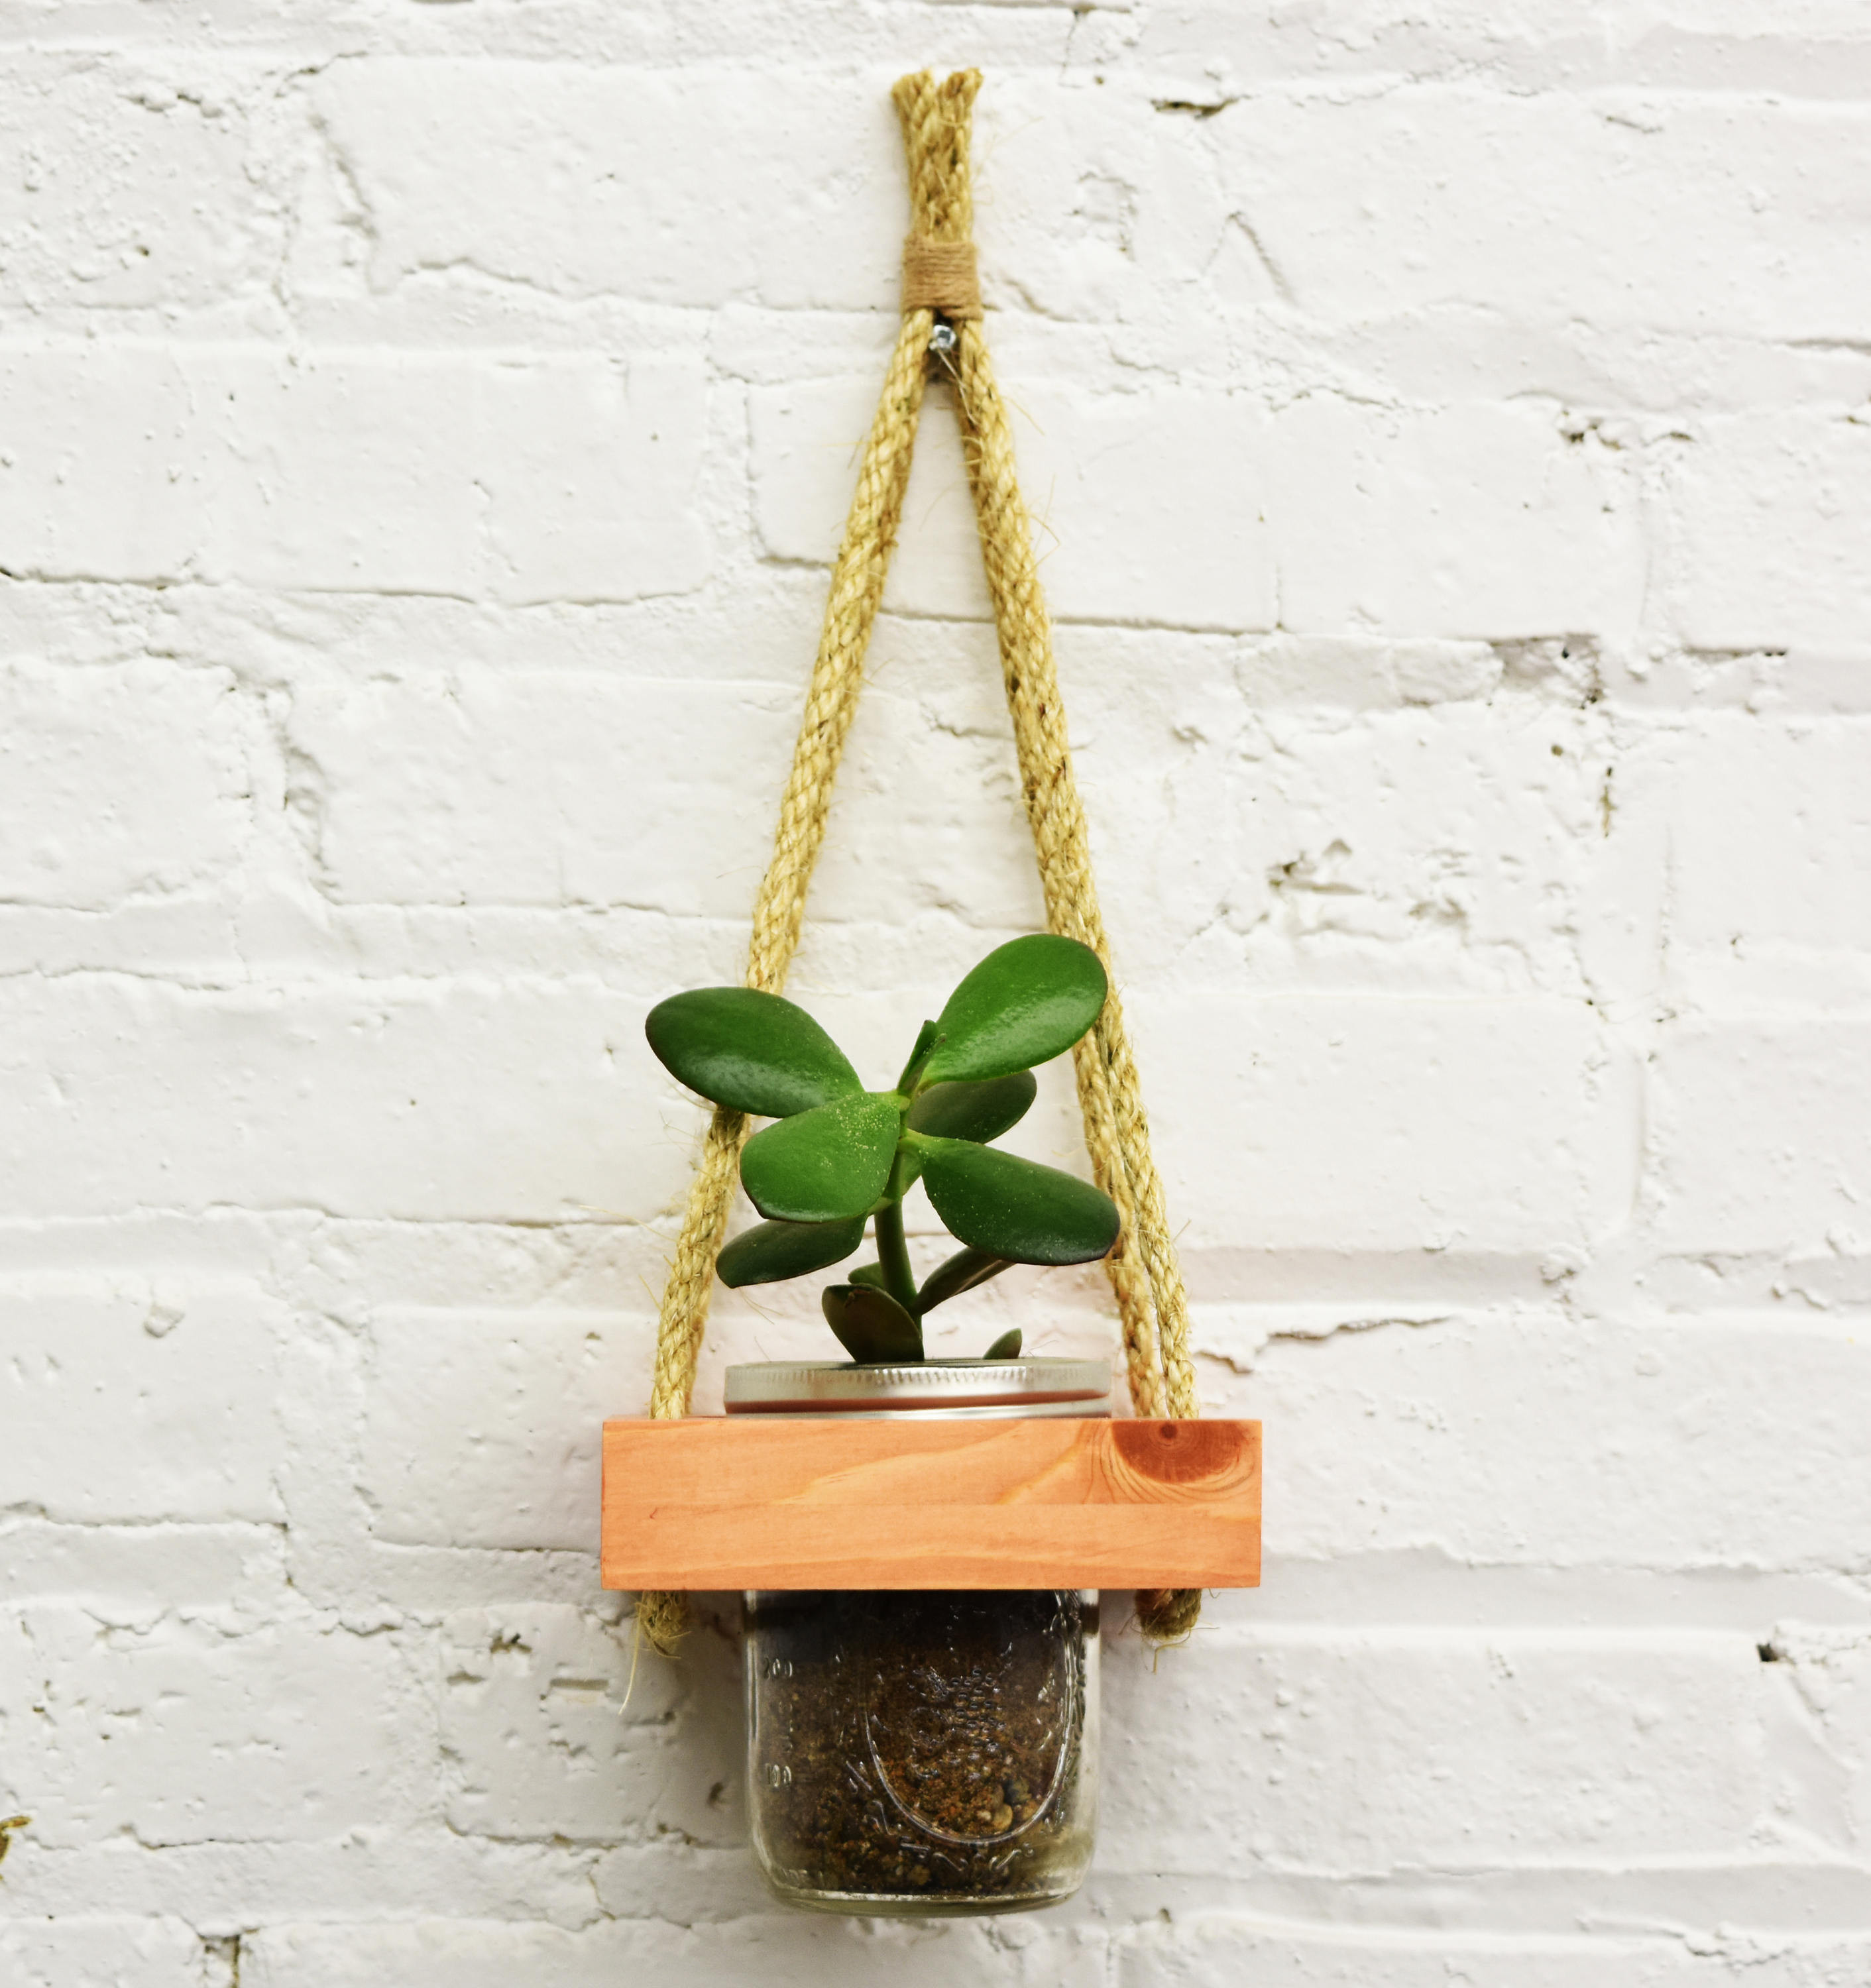 Best ideas about Hanging Succulent Planter
. Save or Pin Hanging Planter Live Succulents Wall Planter Live Plants Now.